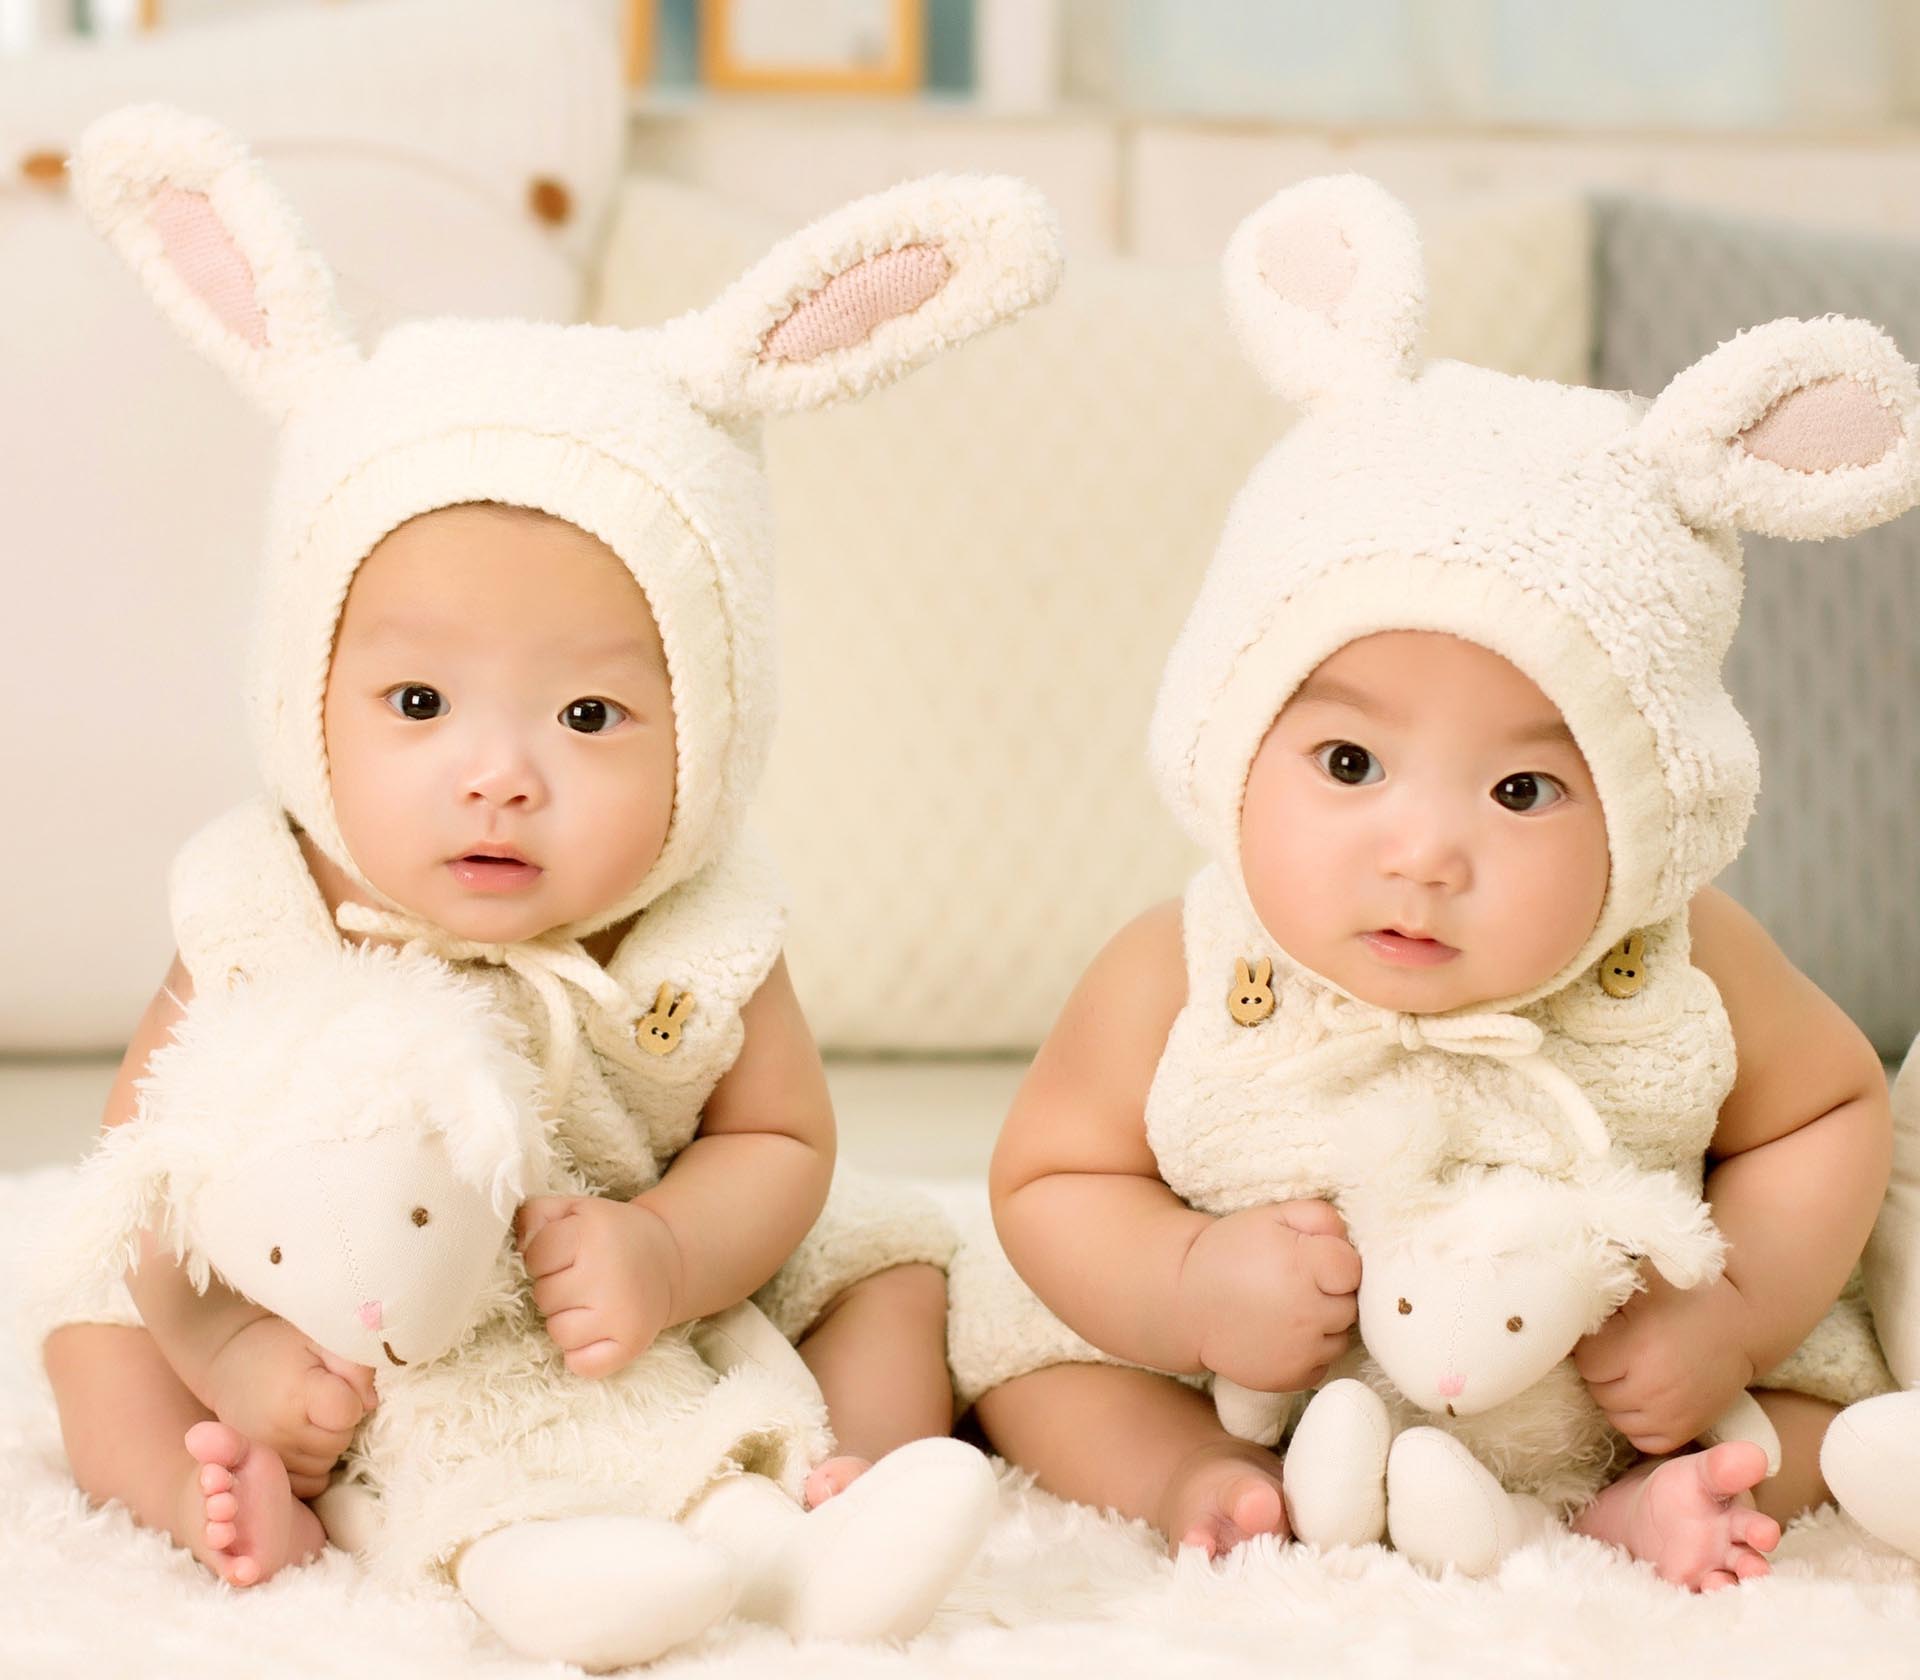 Twins Baby Co Ltd 孖寶嬰兒用品